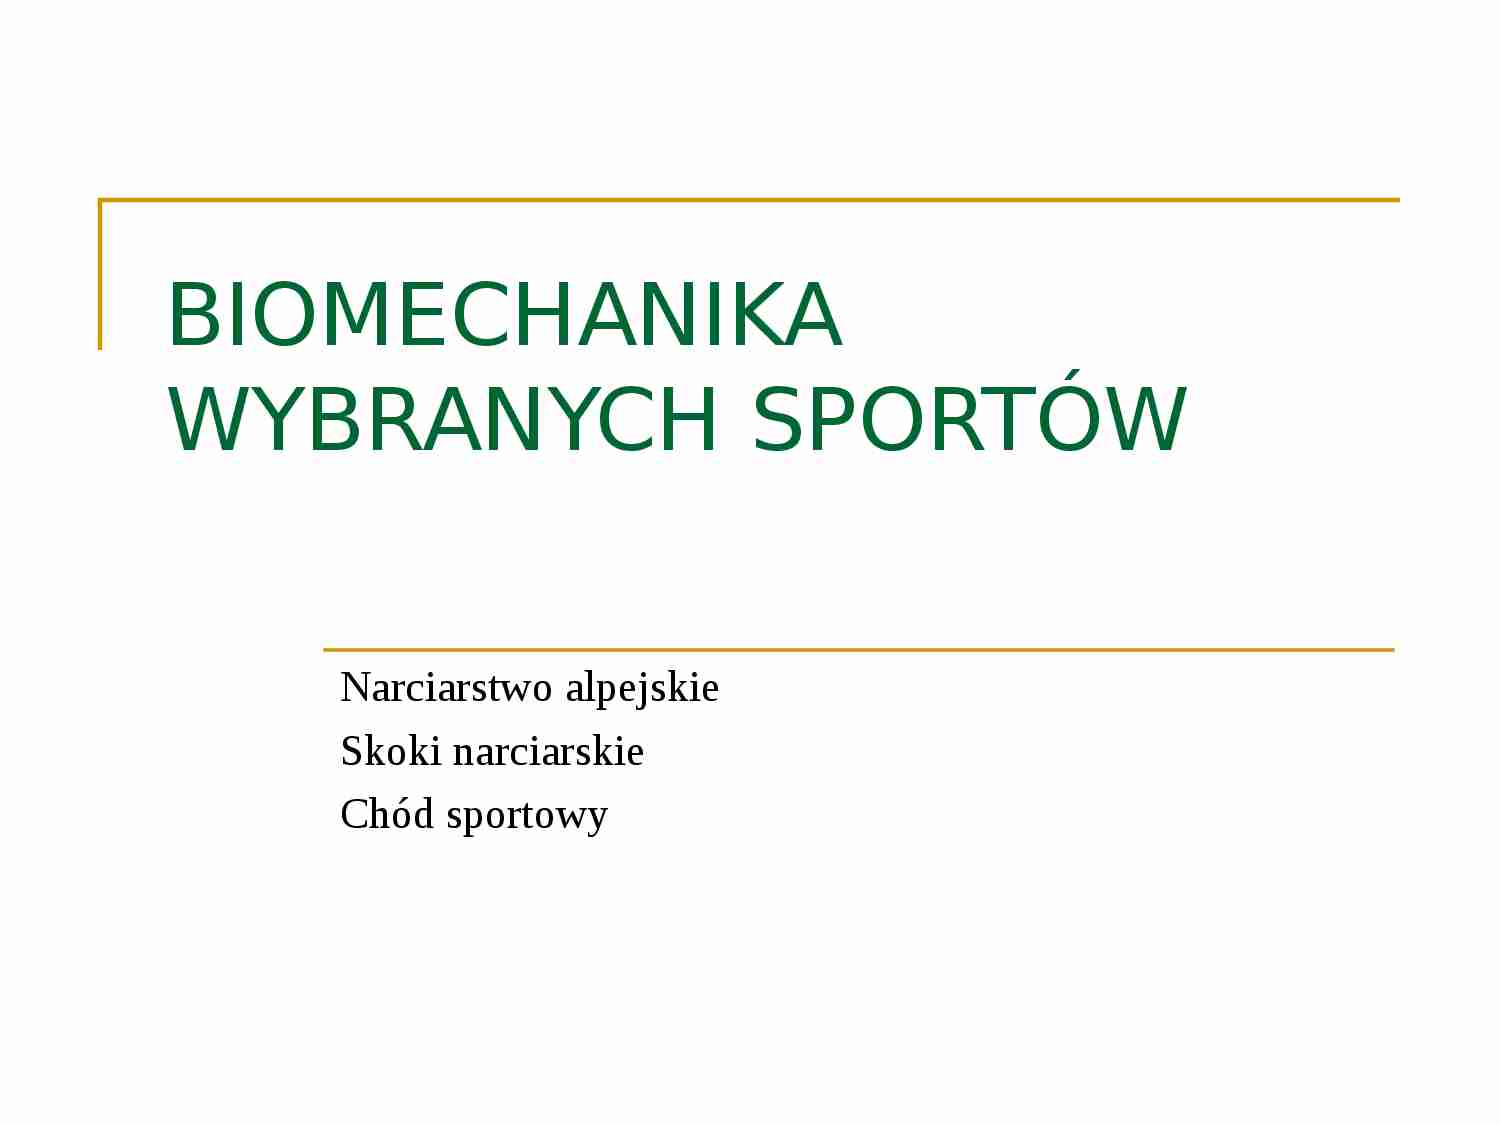 Biomechanika wybranych sportów - strona 1